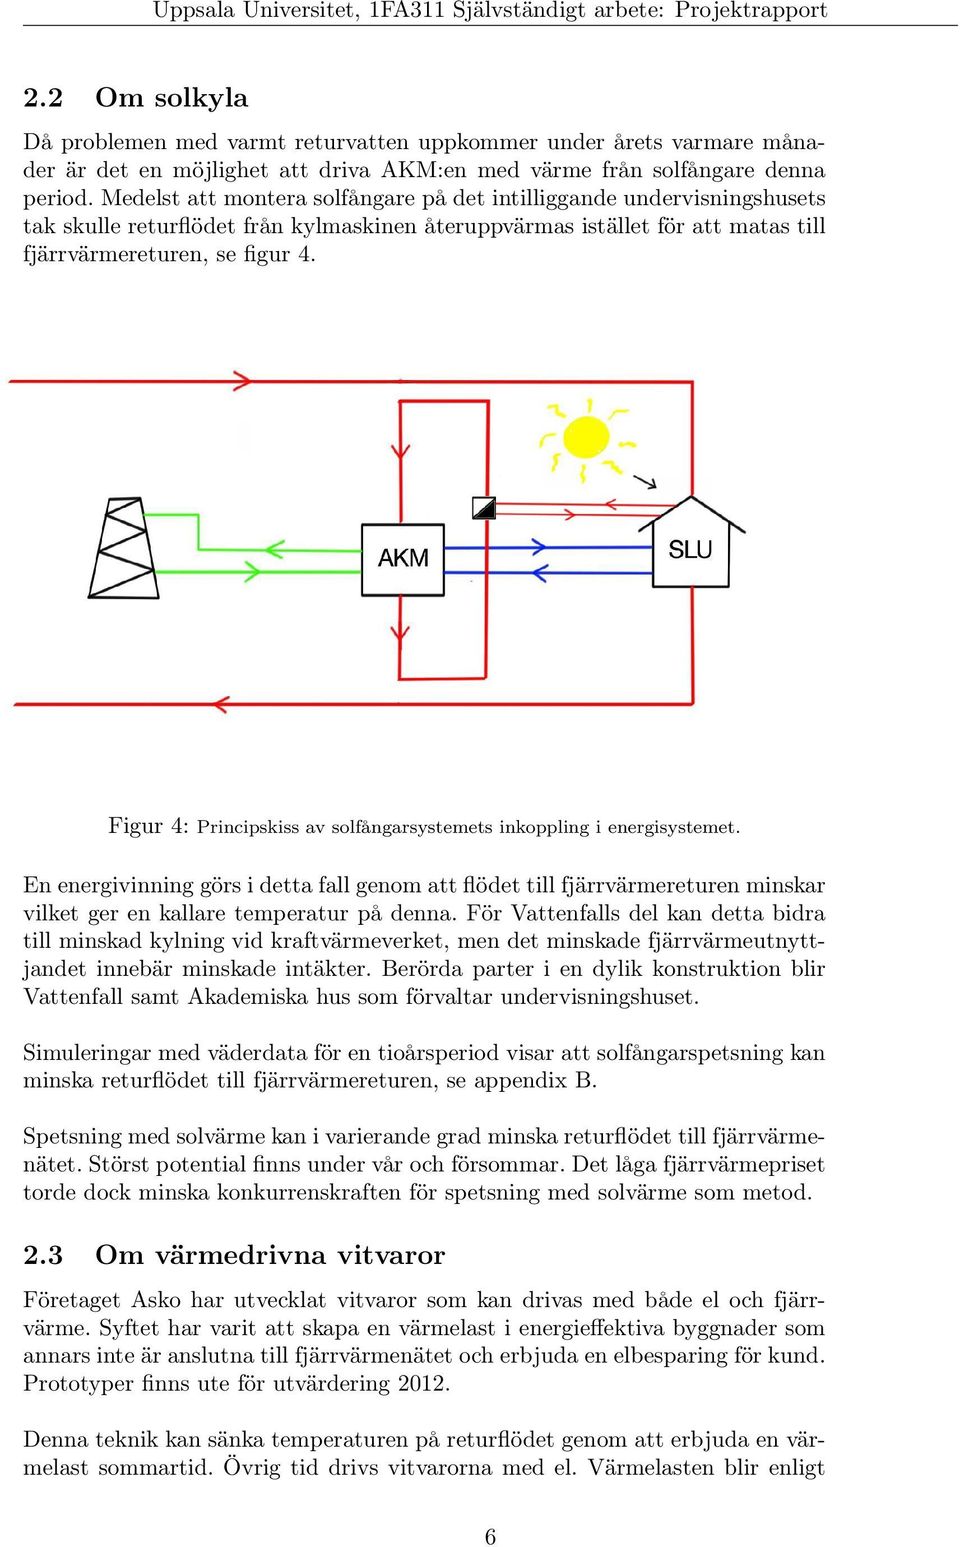 Figur 4: Principskiss av solfångarsystemets inkoppling i energisystemet. En energivinning görs i detta fall genom att flödet till fjärrvärmereturen minskar vilket ger en kallare temperatur på denna.